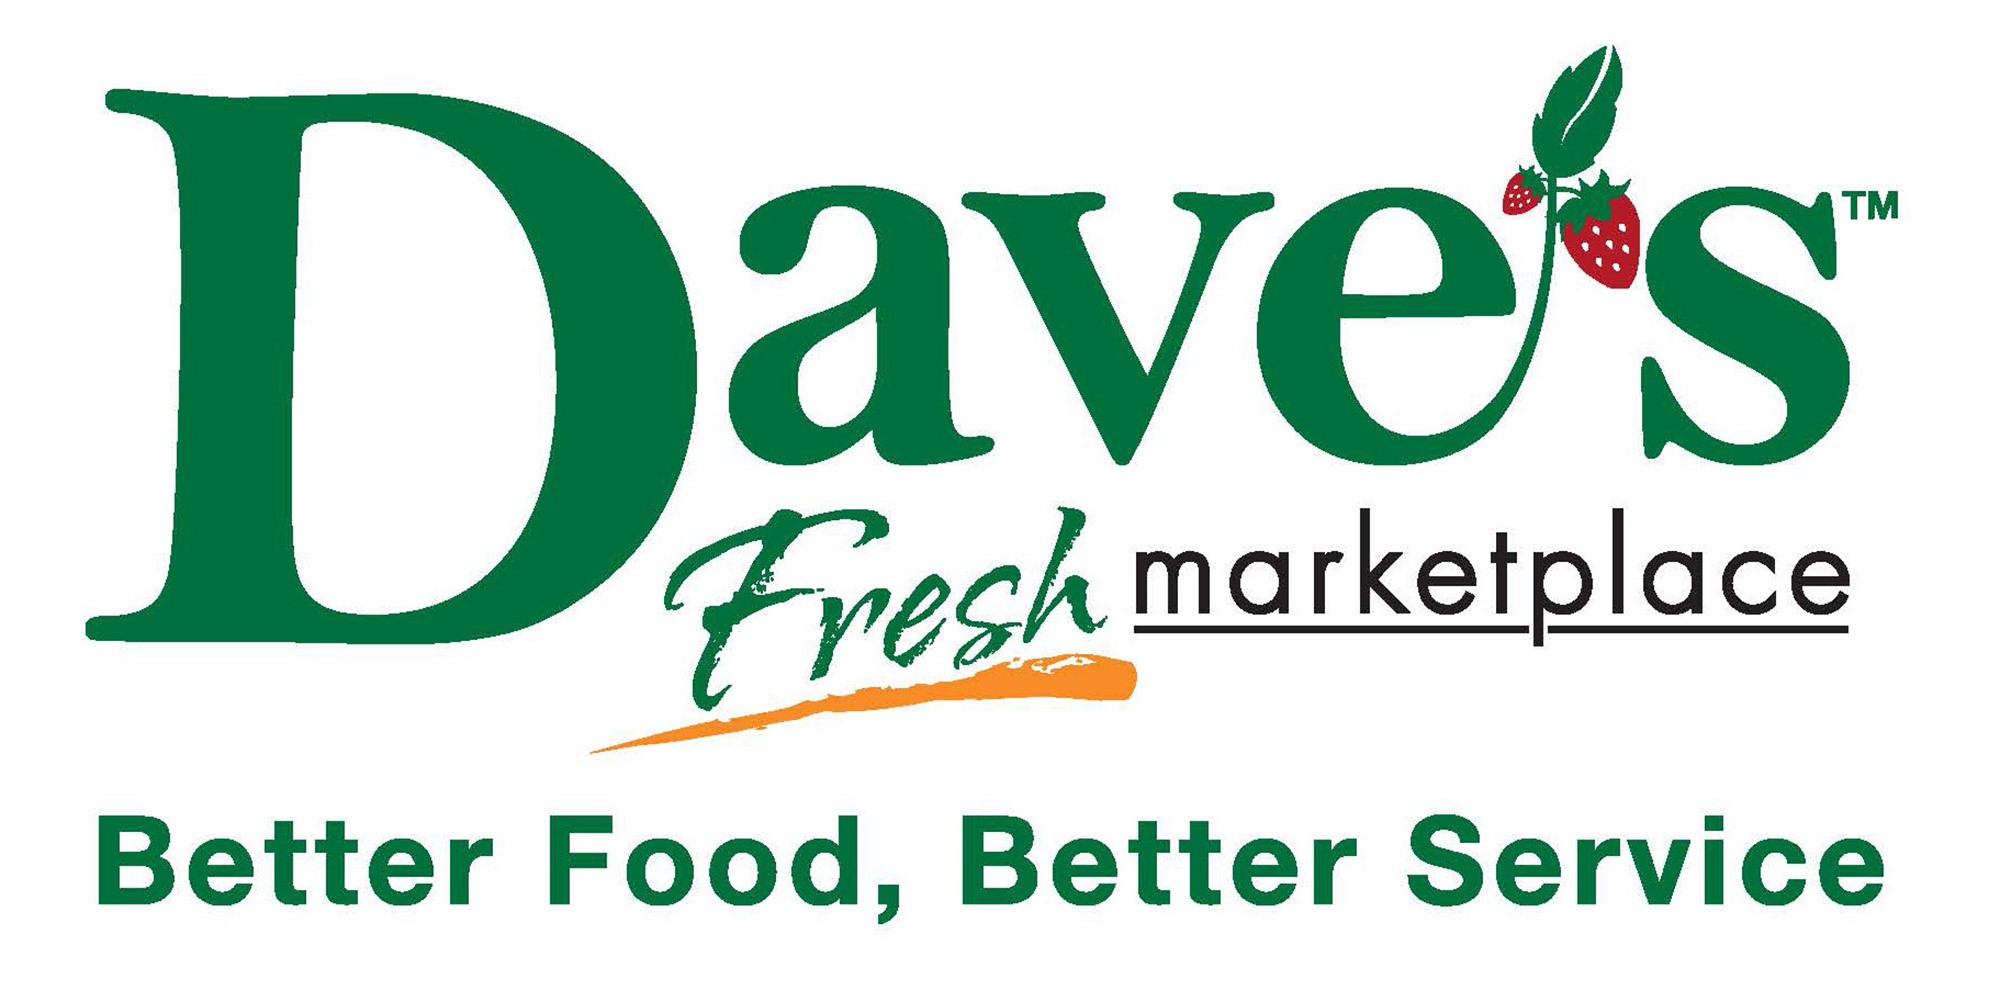 Dave's Logo